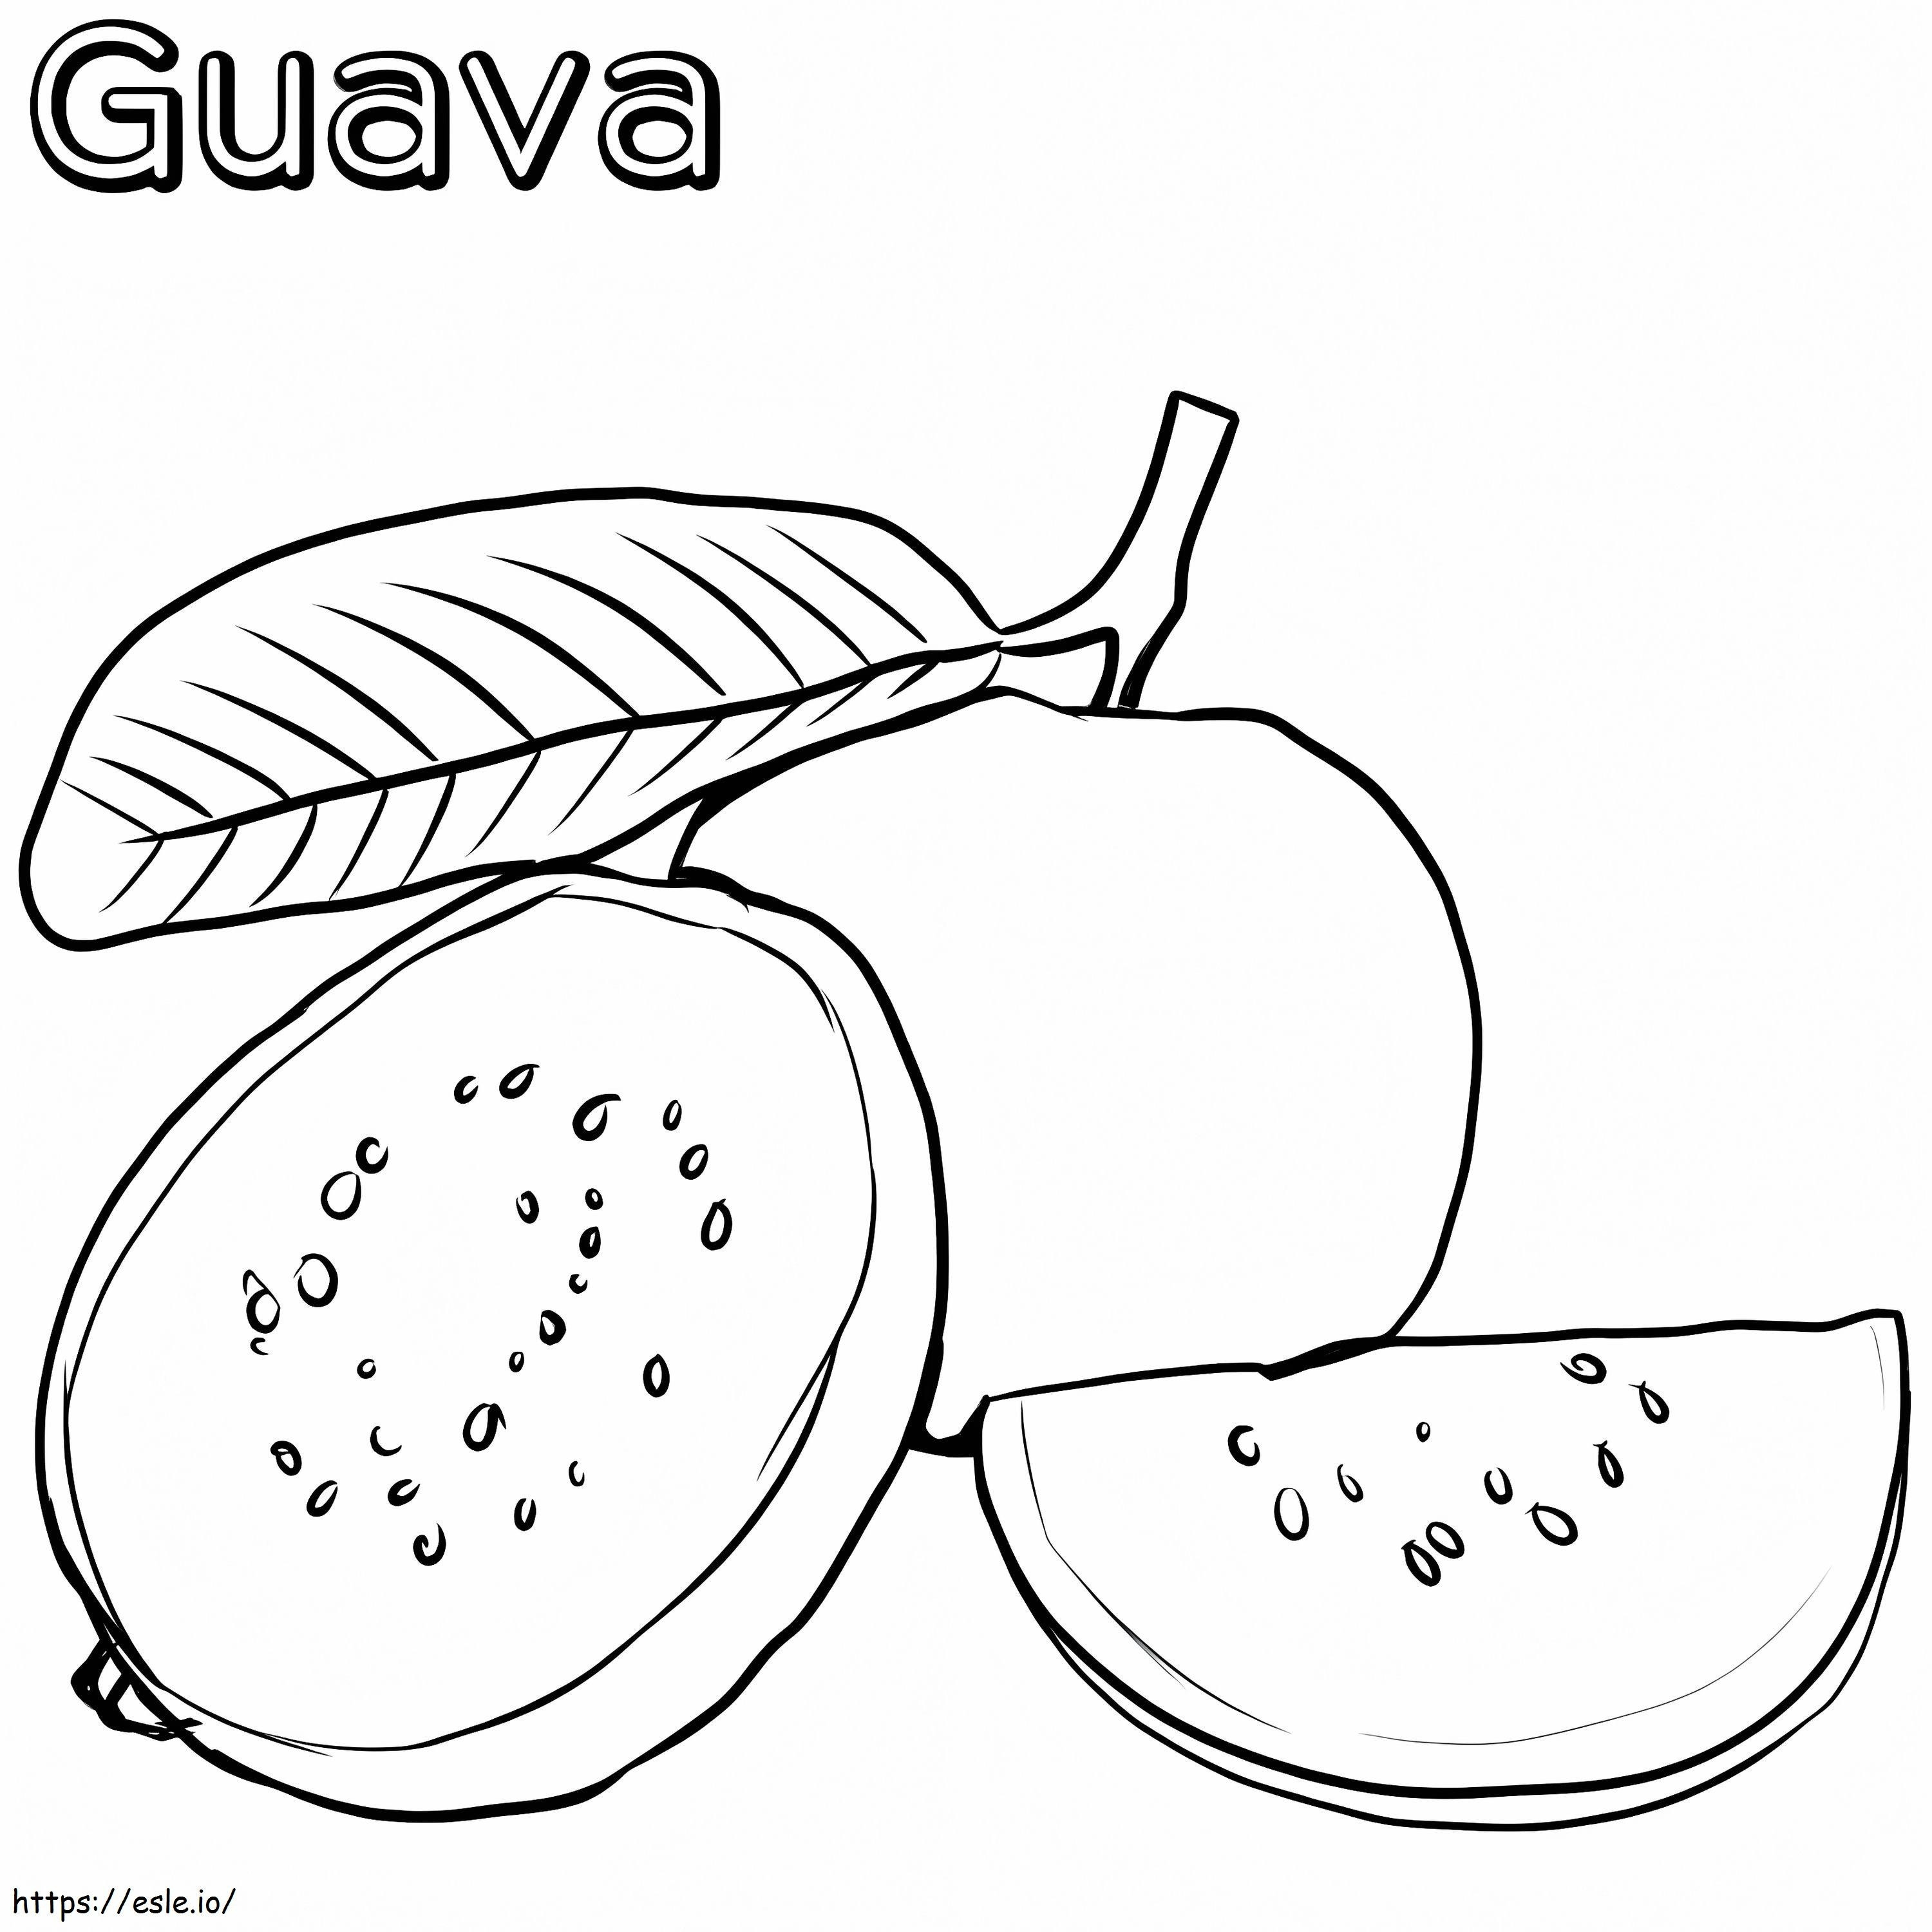 Temel Guava boyama